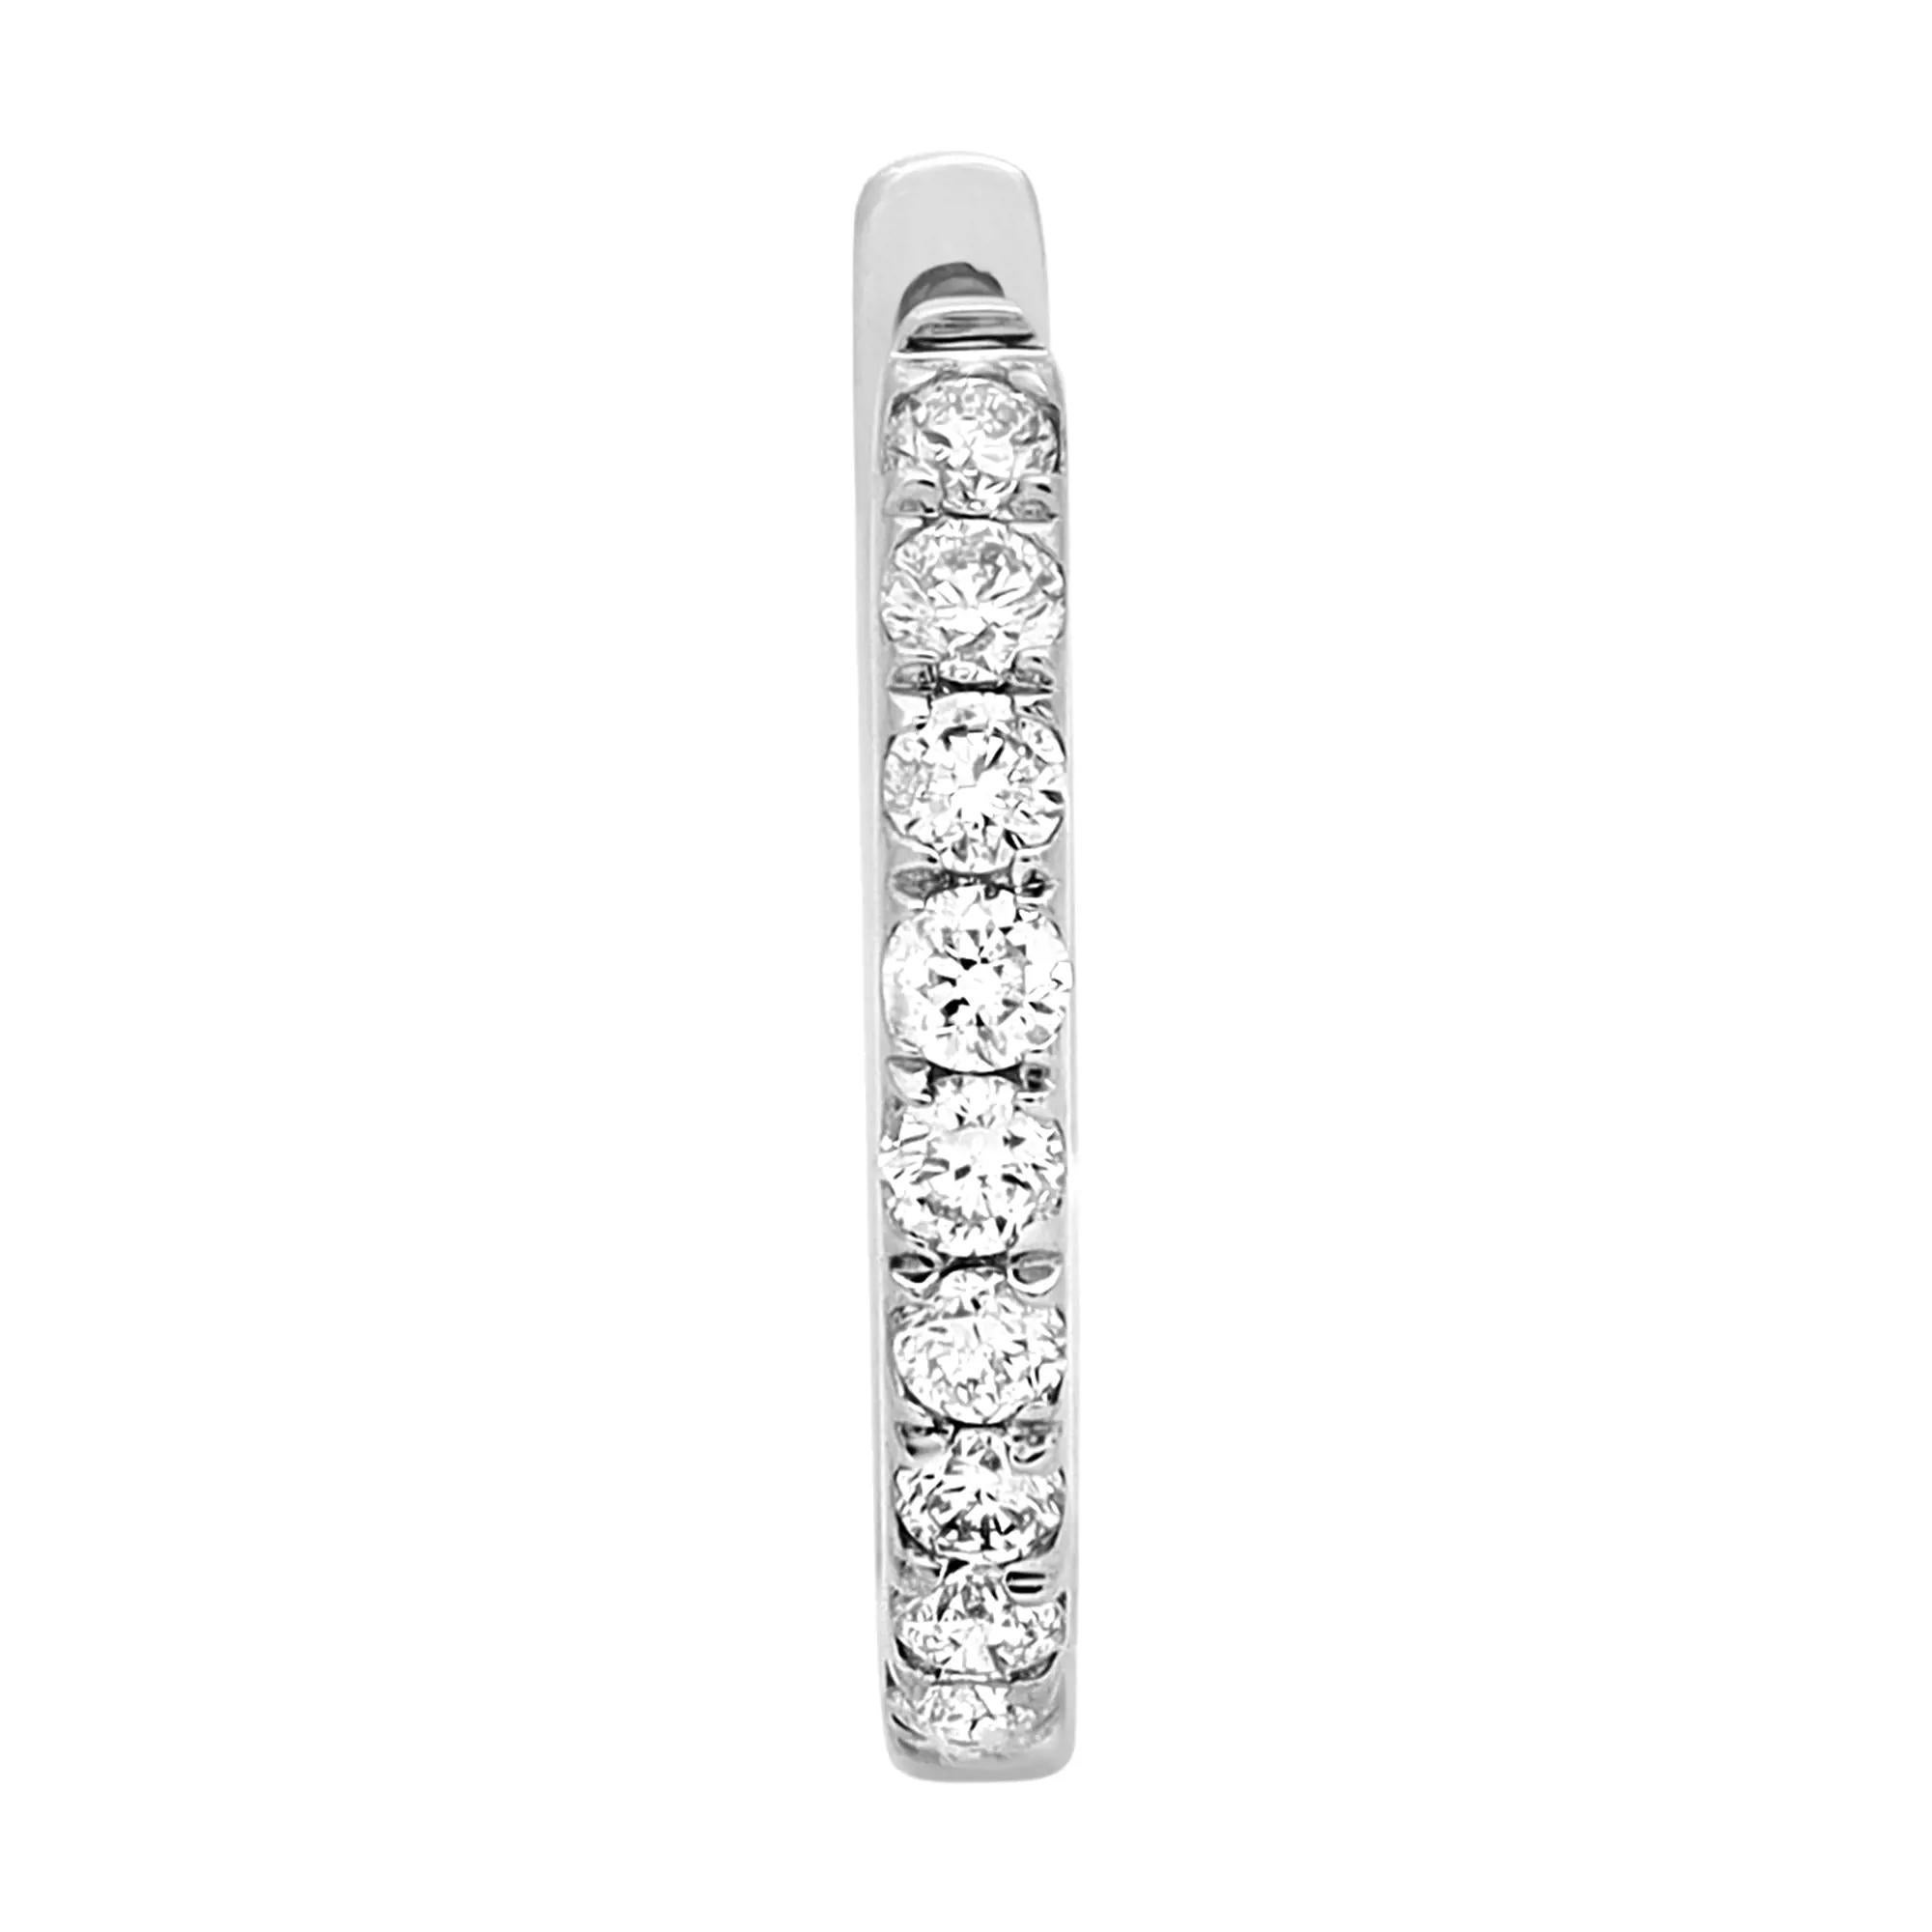 Diese zeitlosen Diamant-Ohrringe sind klassisch und elegant und eignen sich perfekt für den Alltag. Mit einer Reihe von in Zacken gefassten, strahlend weißen, runden Diamanten in glänzendem 14-karätigem Weißgold. Gesamtgewicht der Diamanten: 0,20